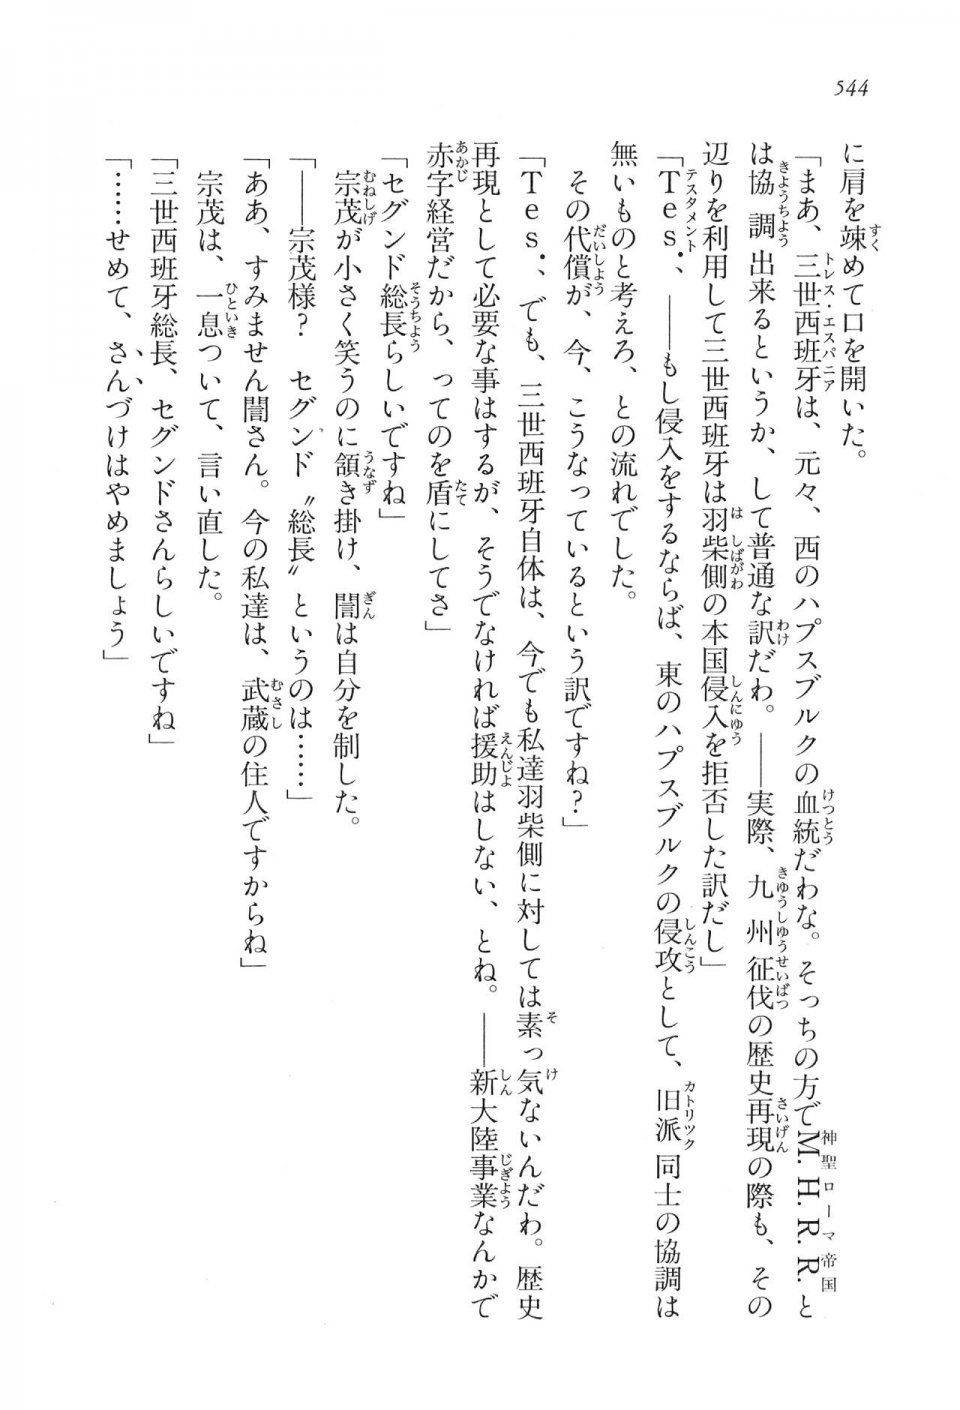 Kyoukai Senjou no Horizon LN Vol 16(7A) - Photo #544